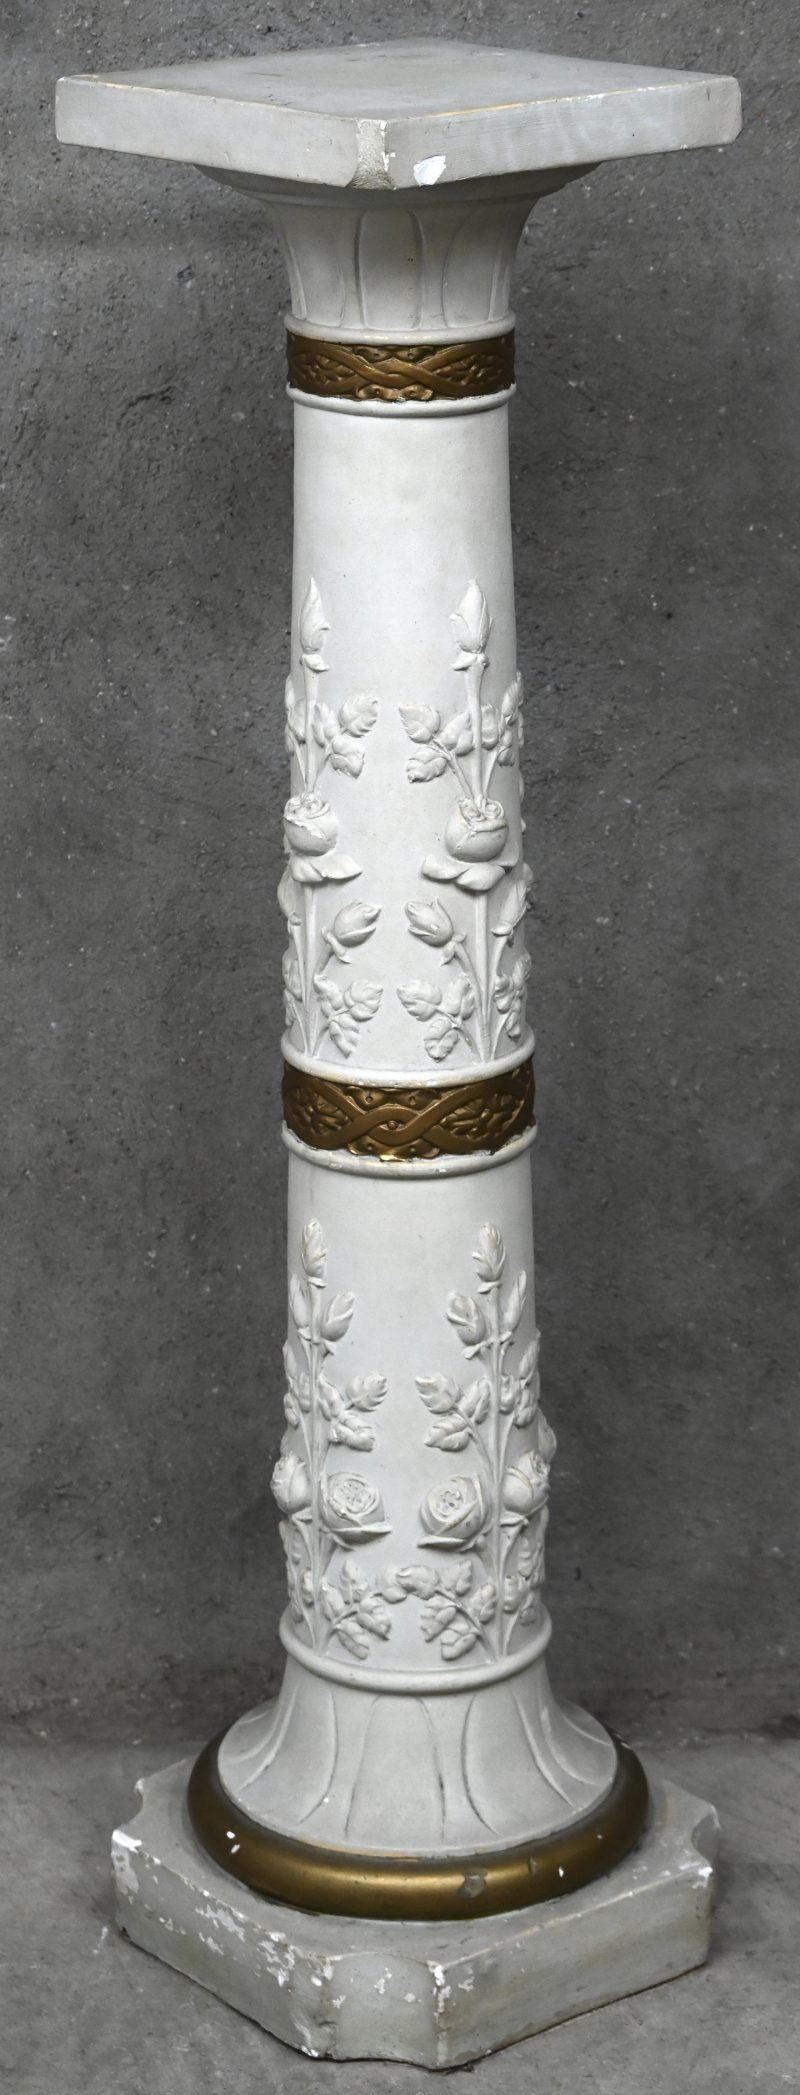 Een uit gips gesculpteerde zuil pilaar als piedestal met rozen ornamenten en vergulde details. Schilferschade aanwezig.